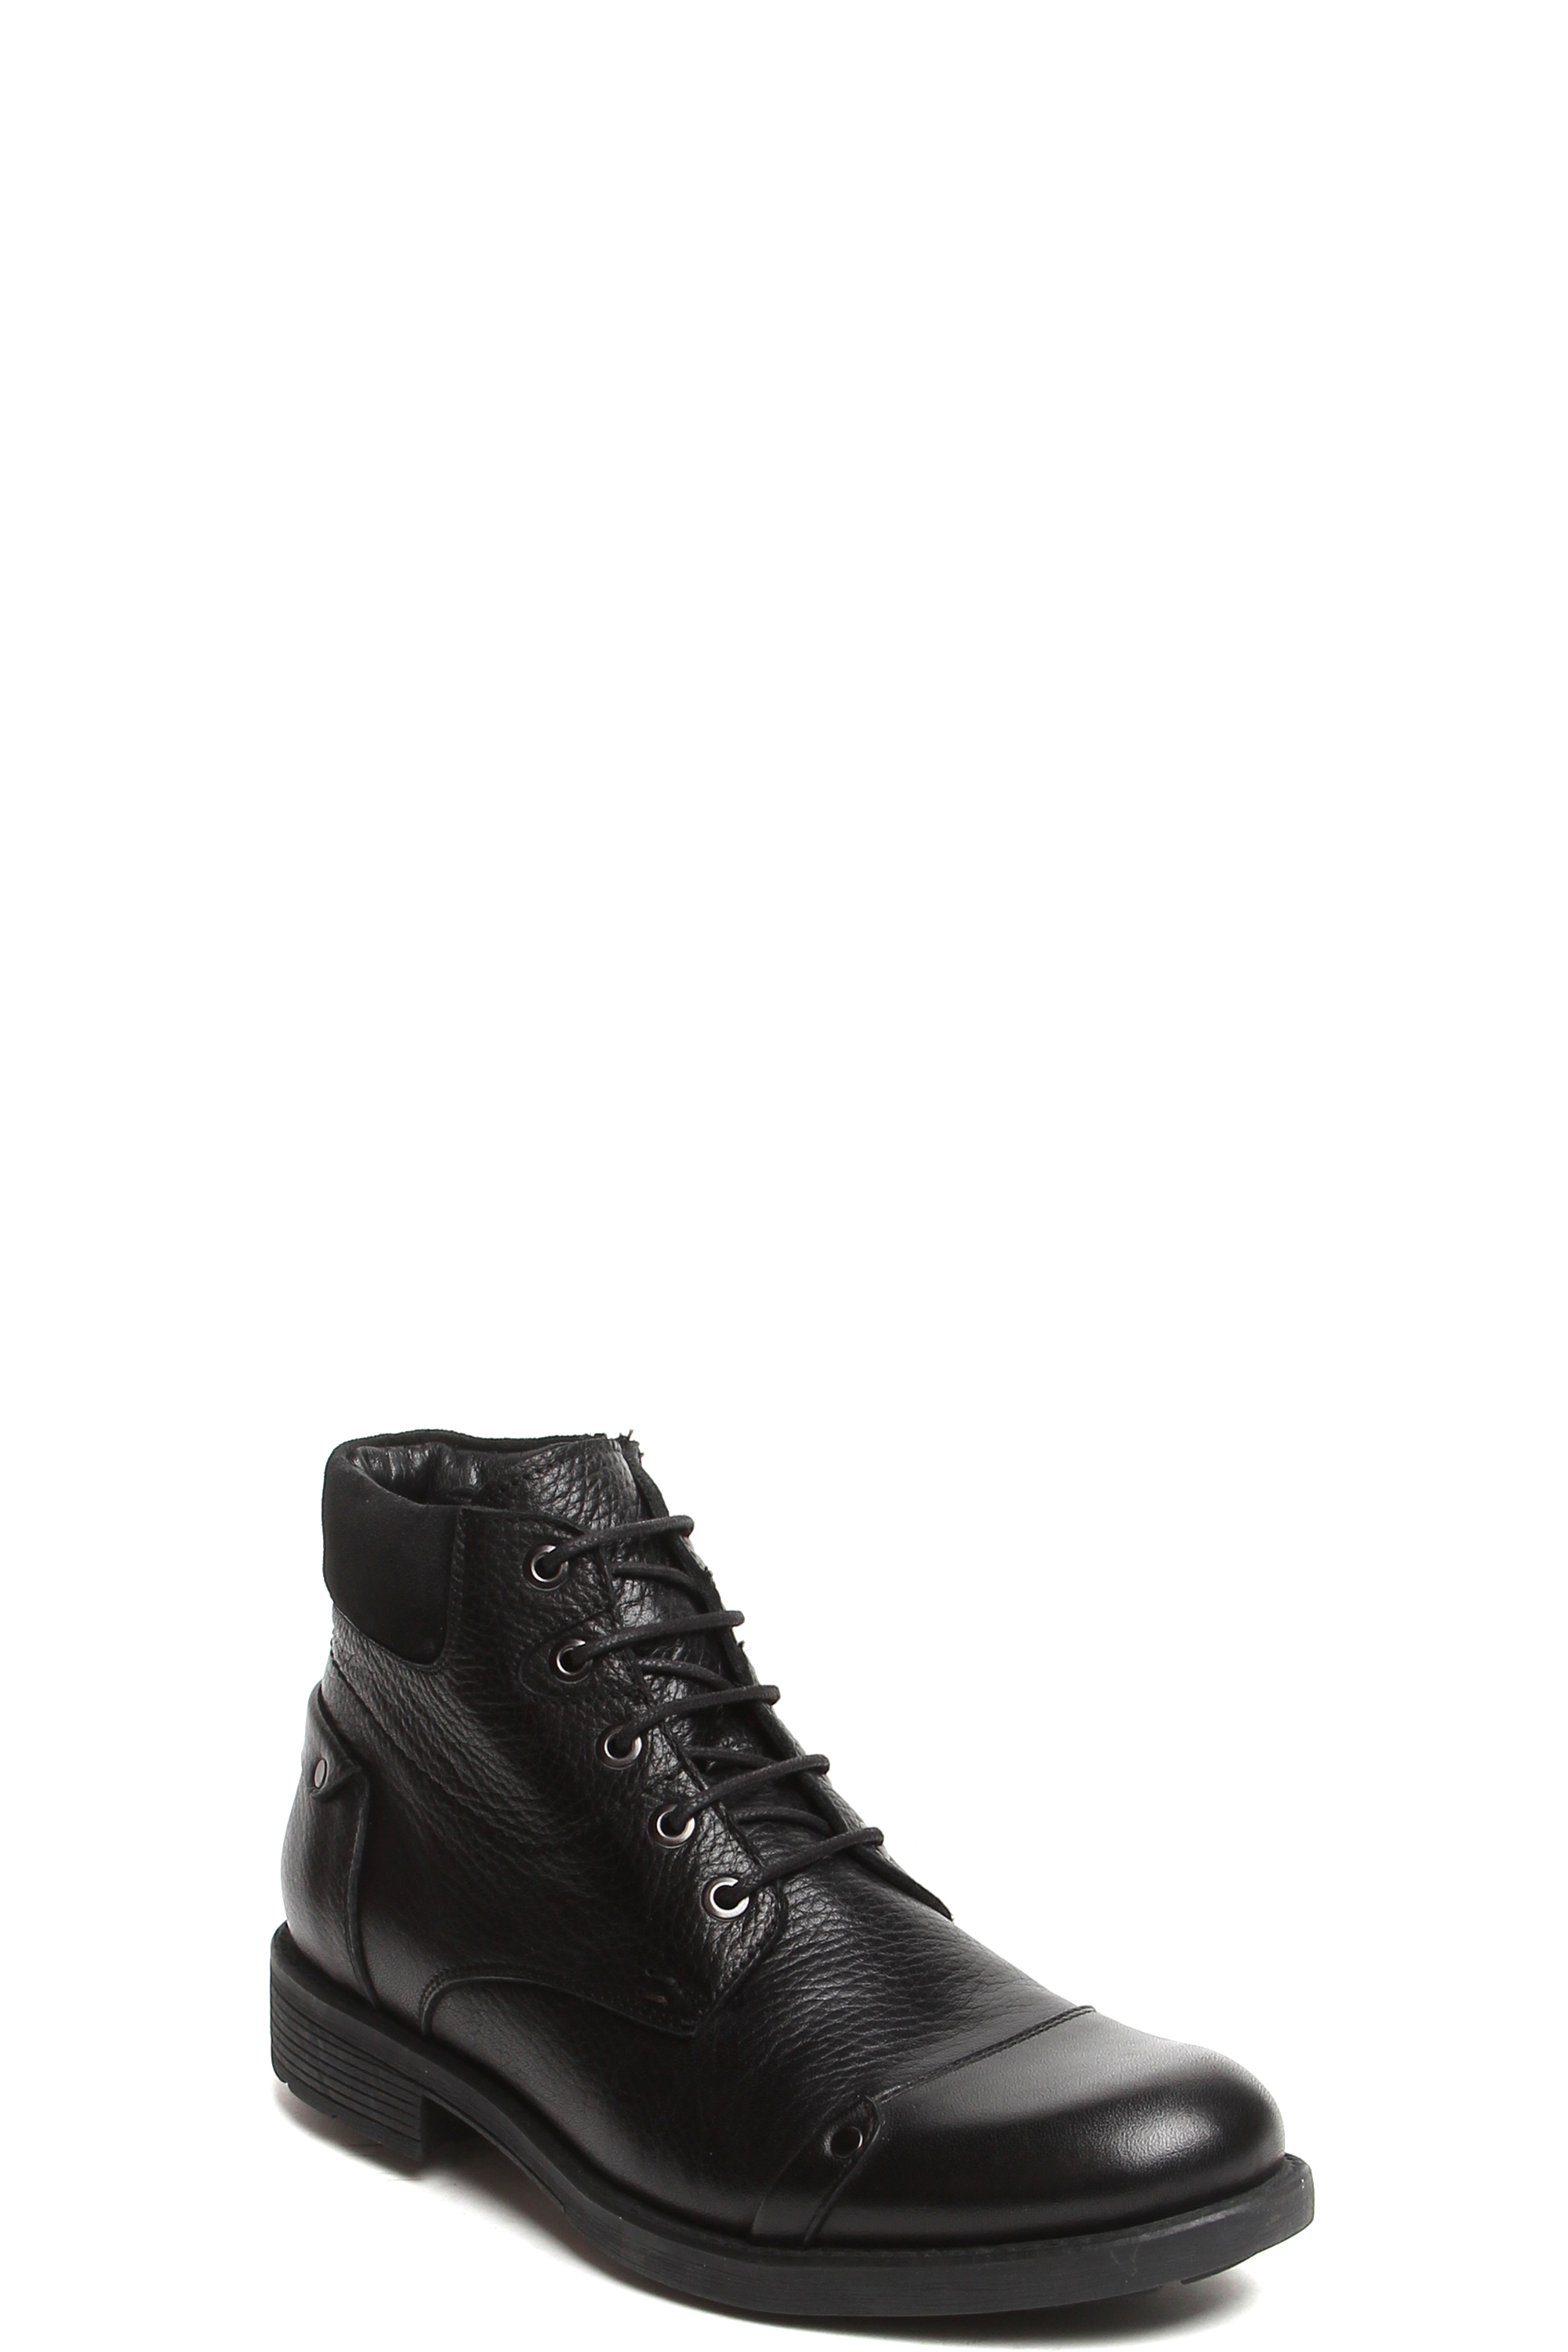 

Ботинки мужские Milana 1828142 черные 45 RU, Черный, 1828142